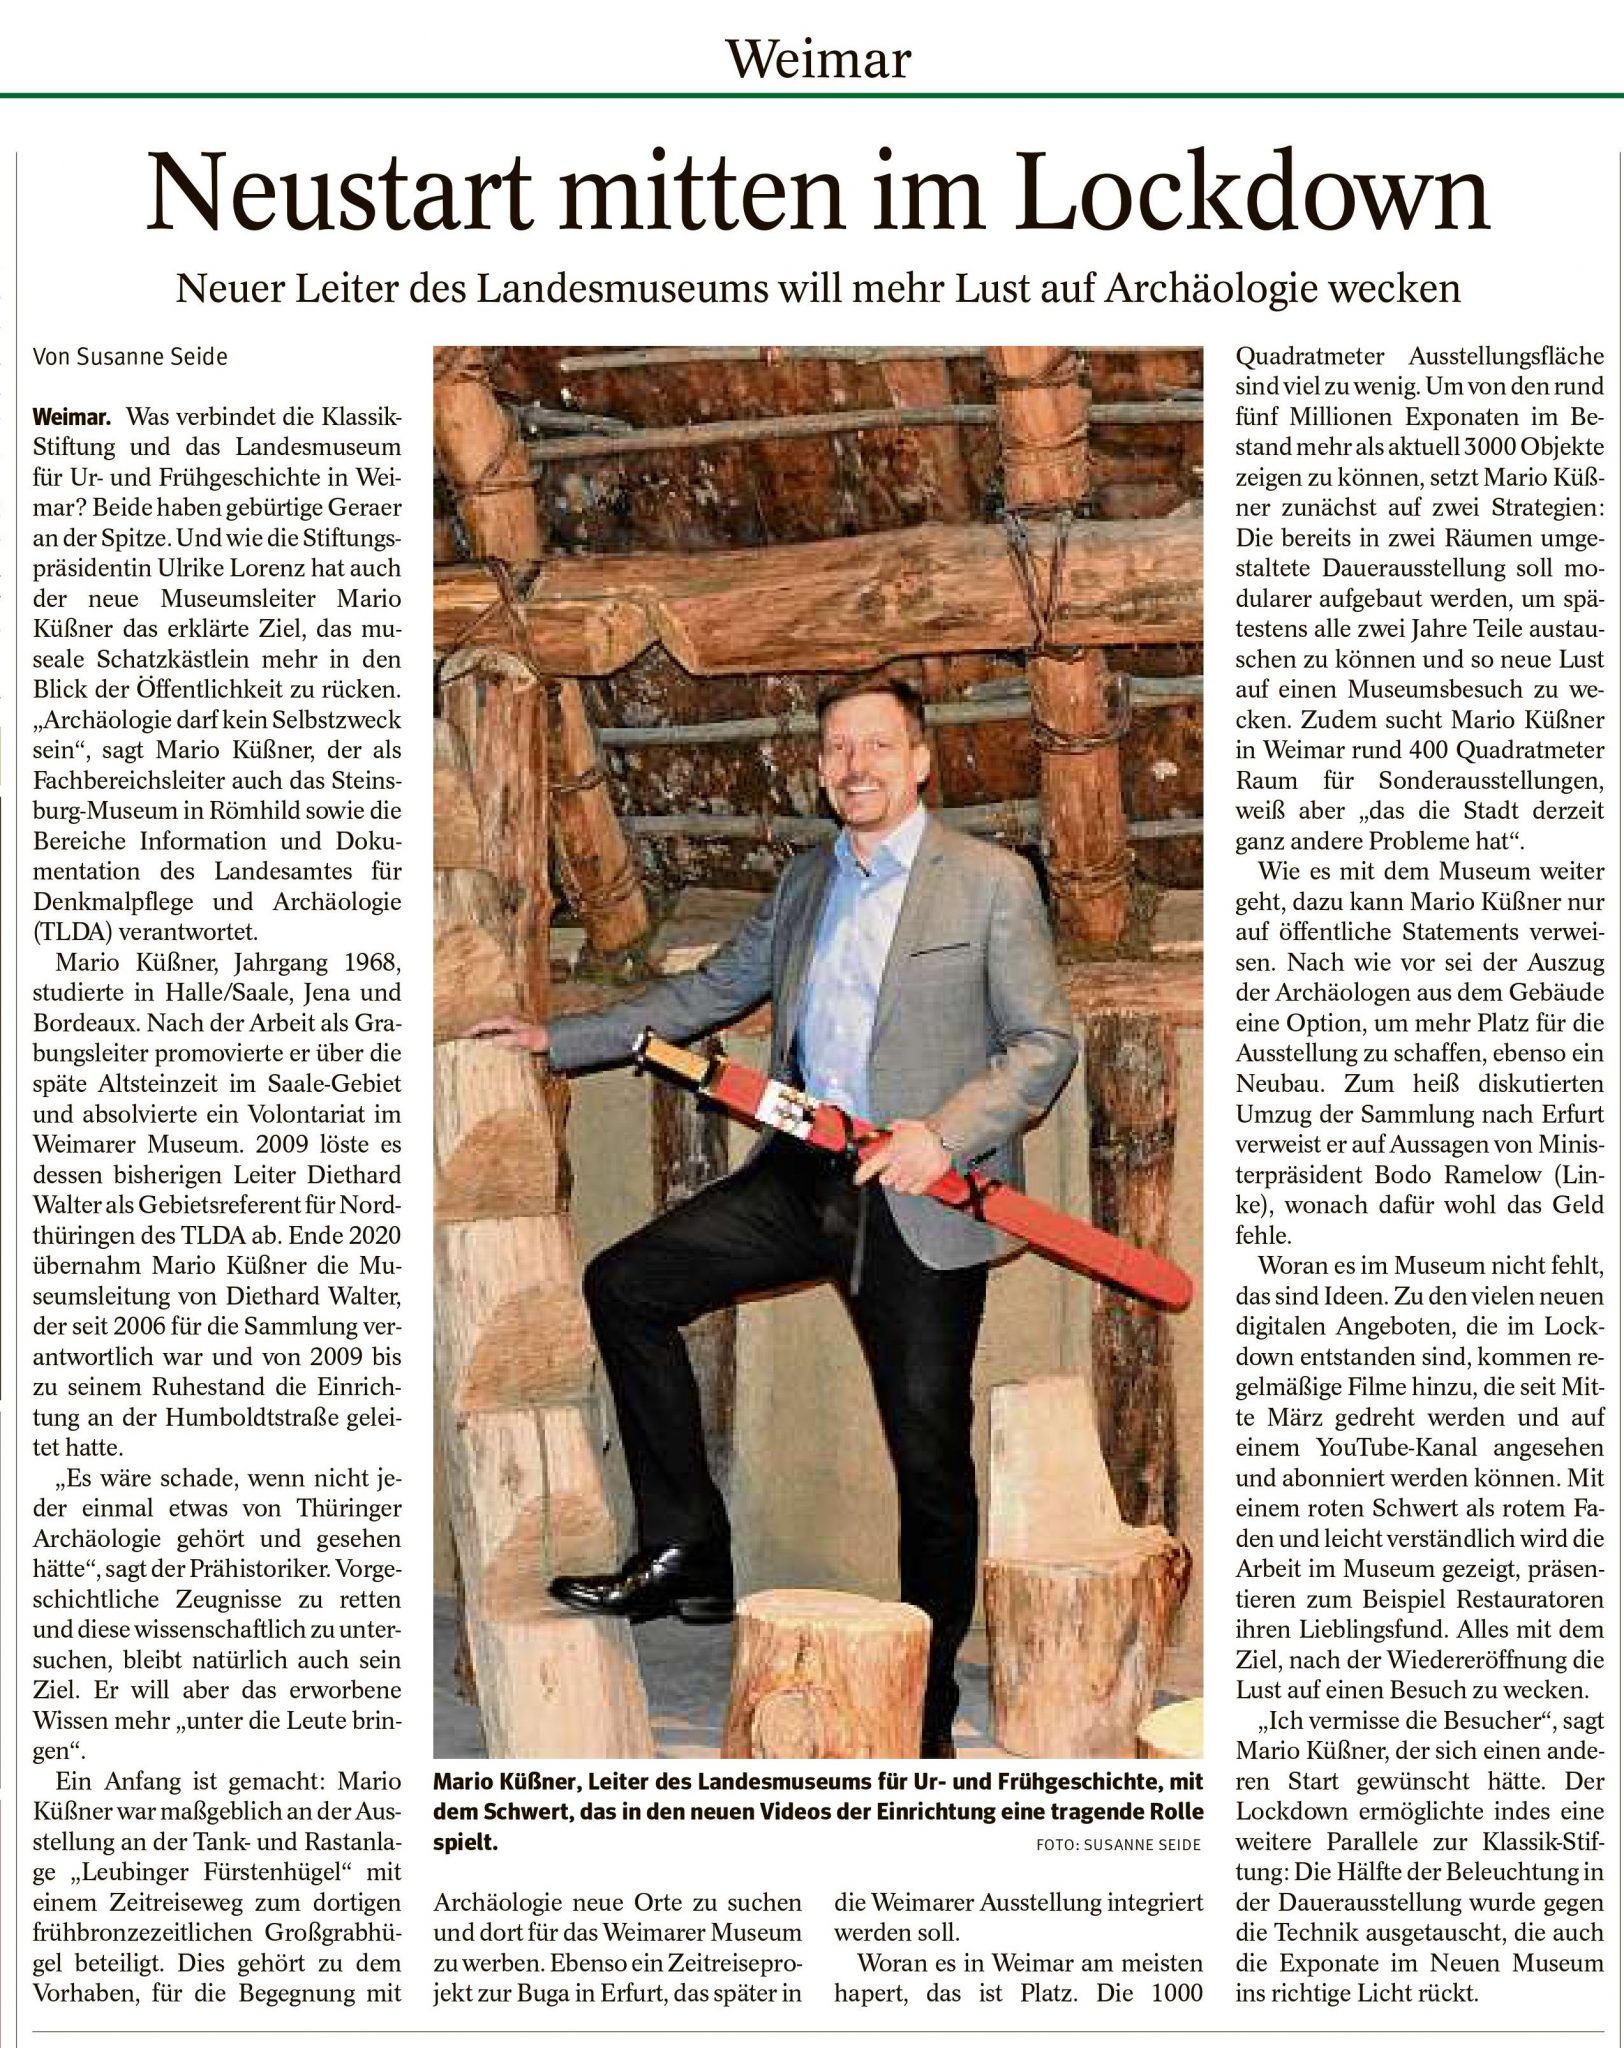 Link zum Bild mit dem Presseartikel aus der Thüringer Allgemeinen vom 23.03.2021